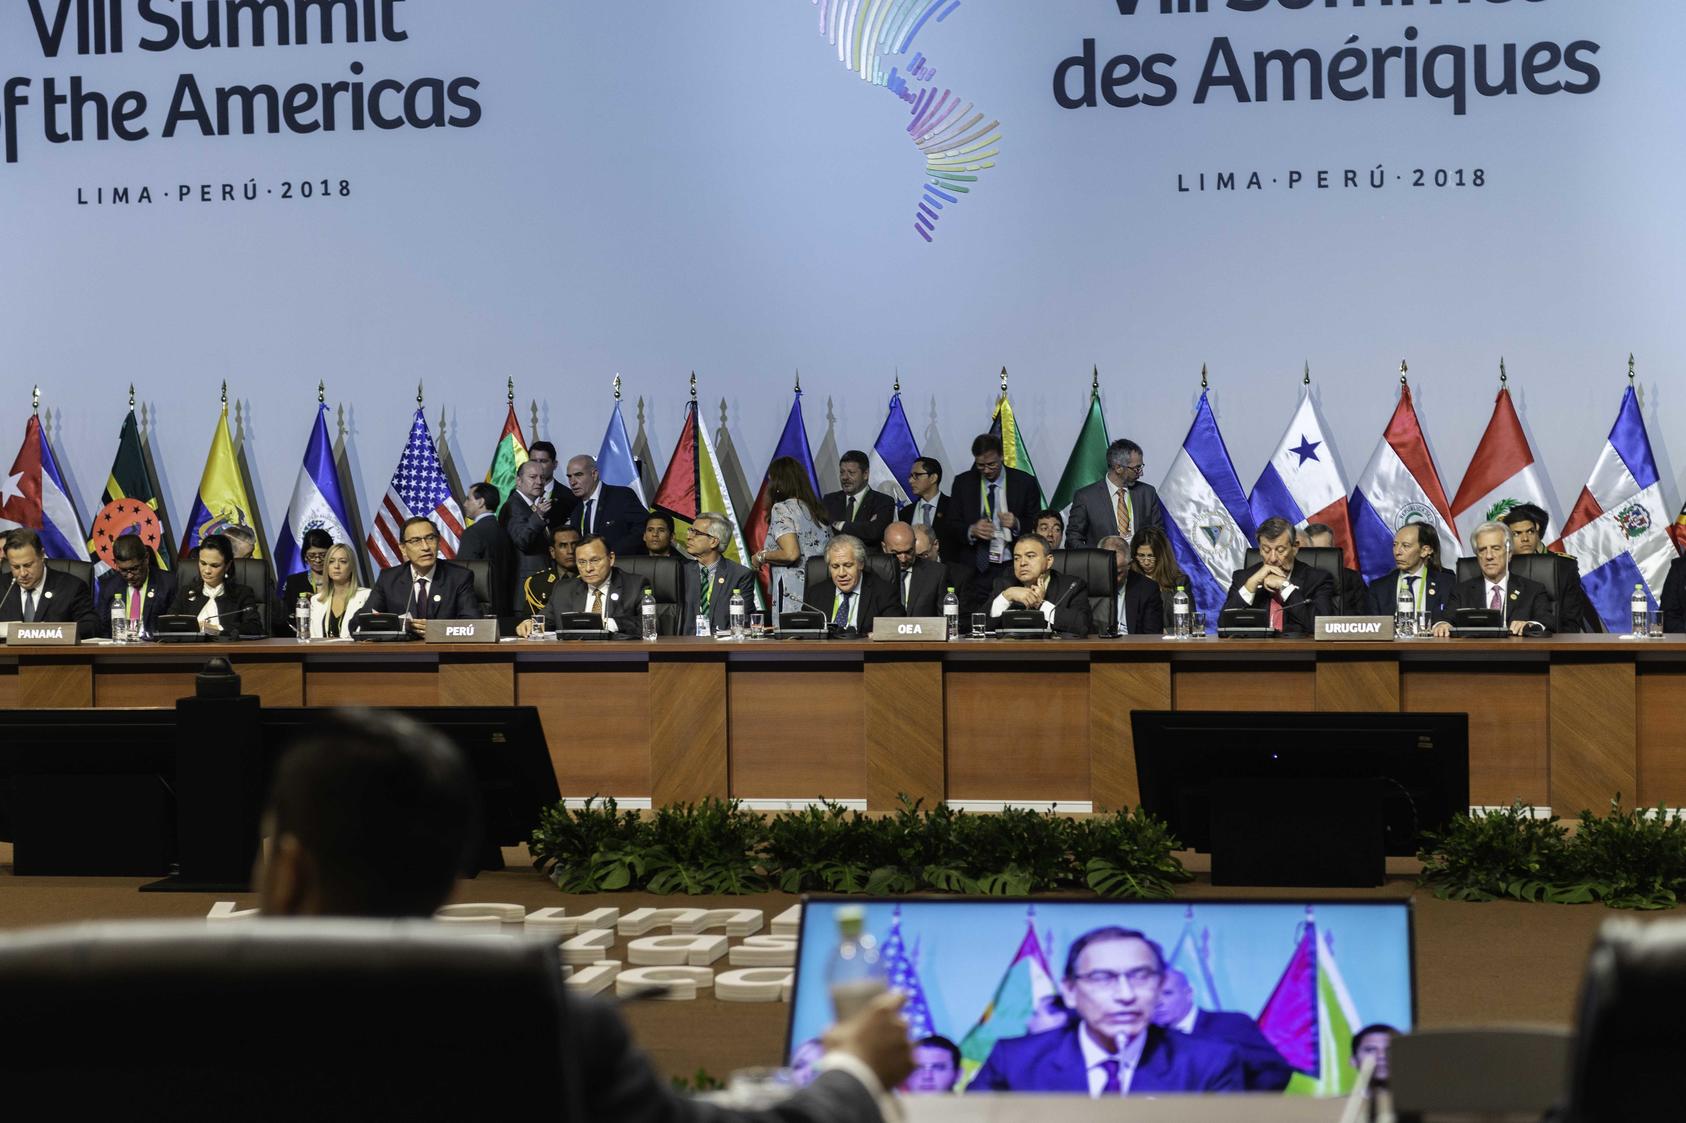 Una sesión plenaria de la Cumbre de las Américas 2018 en Lima, Perú. (Juan Manuel Herrera/Organización de los Estados Americanos)